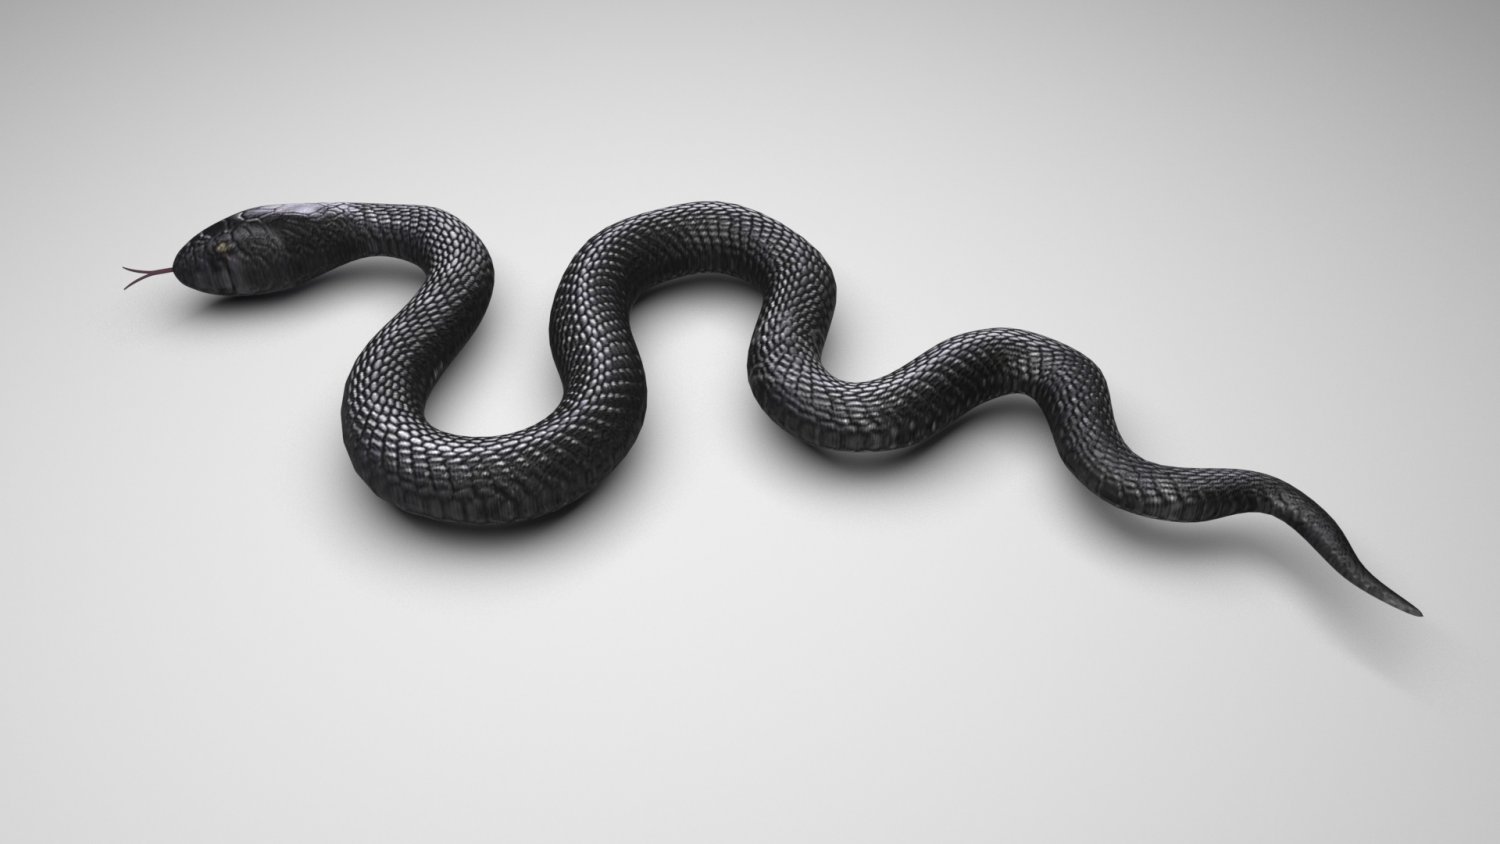 Snake (3D) - CLIP STUDIO ASSETS